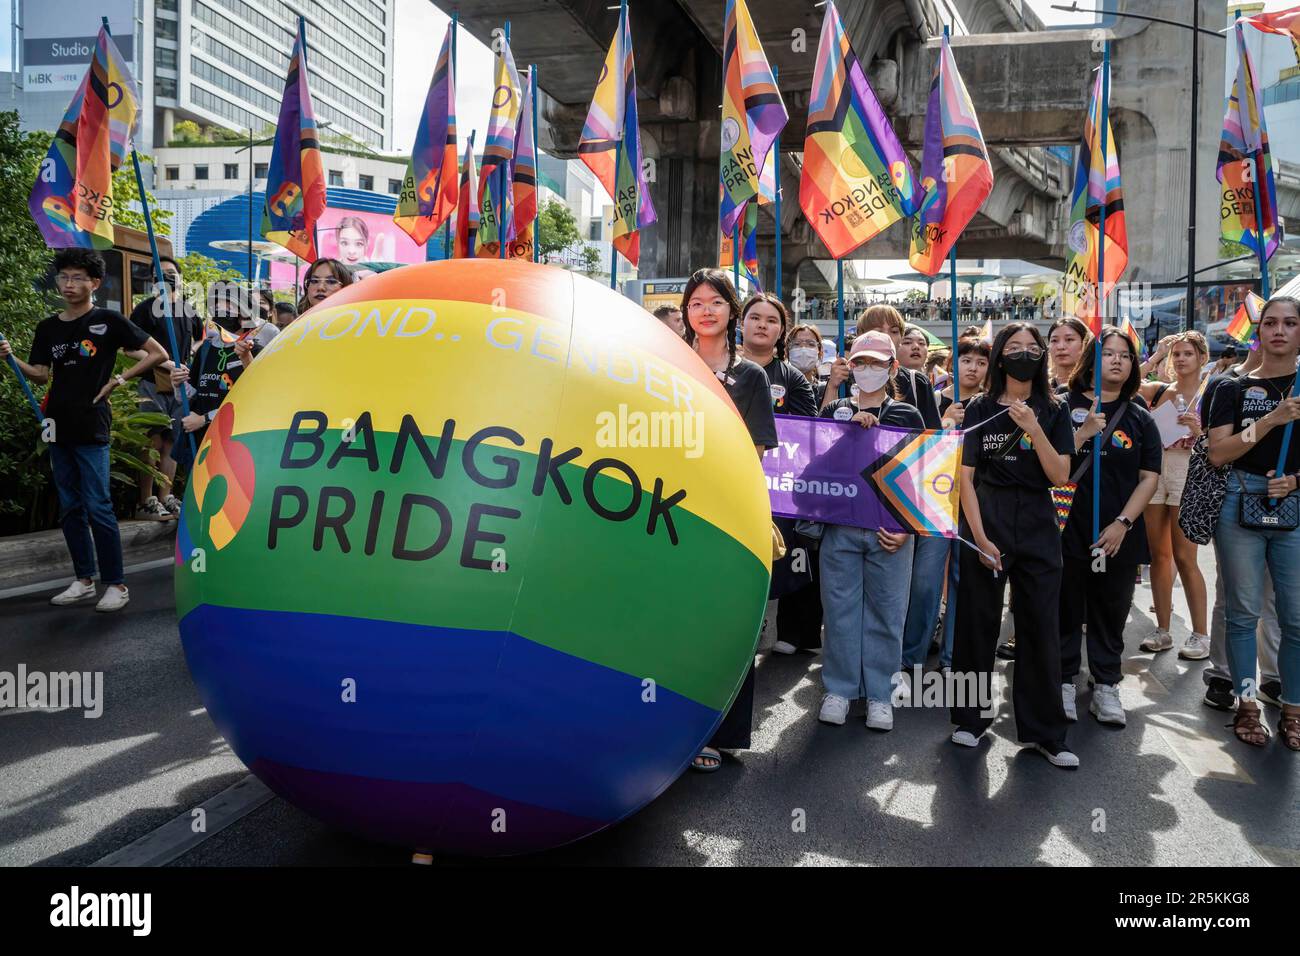 Se ve a la gente desfilando durante el Desfile del Orgullo de Bangkok 2023 detrás del símbolo y el tema del Desfile del Orgullo de Bangkok 2023 'Más allá del Género', en el Centro de Arte y Cultura de Bangkok (BACC) en la intersección de Pathumwan. Organizado por la organización sin fines de lucro Naruemit Pride y la Administración Metropolitana de Bangkok, Bangkok PRIDE DESFILE 2023 bajo el tema ìBeyond Genderî Empieza desde el Centro de Arte y Cultura de Bangkok (BACC) en la intersección de Pathumwan con Rama 1 Road. Organizado por la organización sin fines de lucro Naruemit Pride y la Administración Metropolitana de Bangkok, el desfile del orgullo de Bangkok 2023 bajo el tema “Más allá de Gend Foto de stock